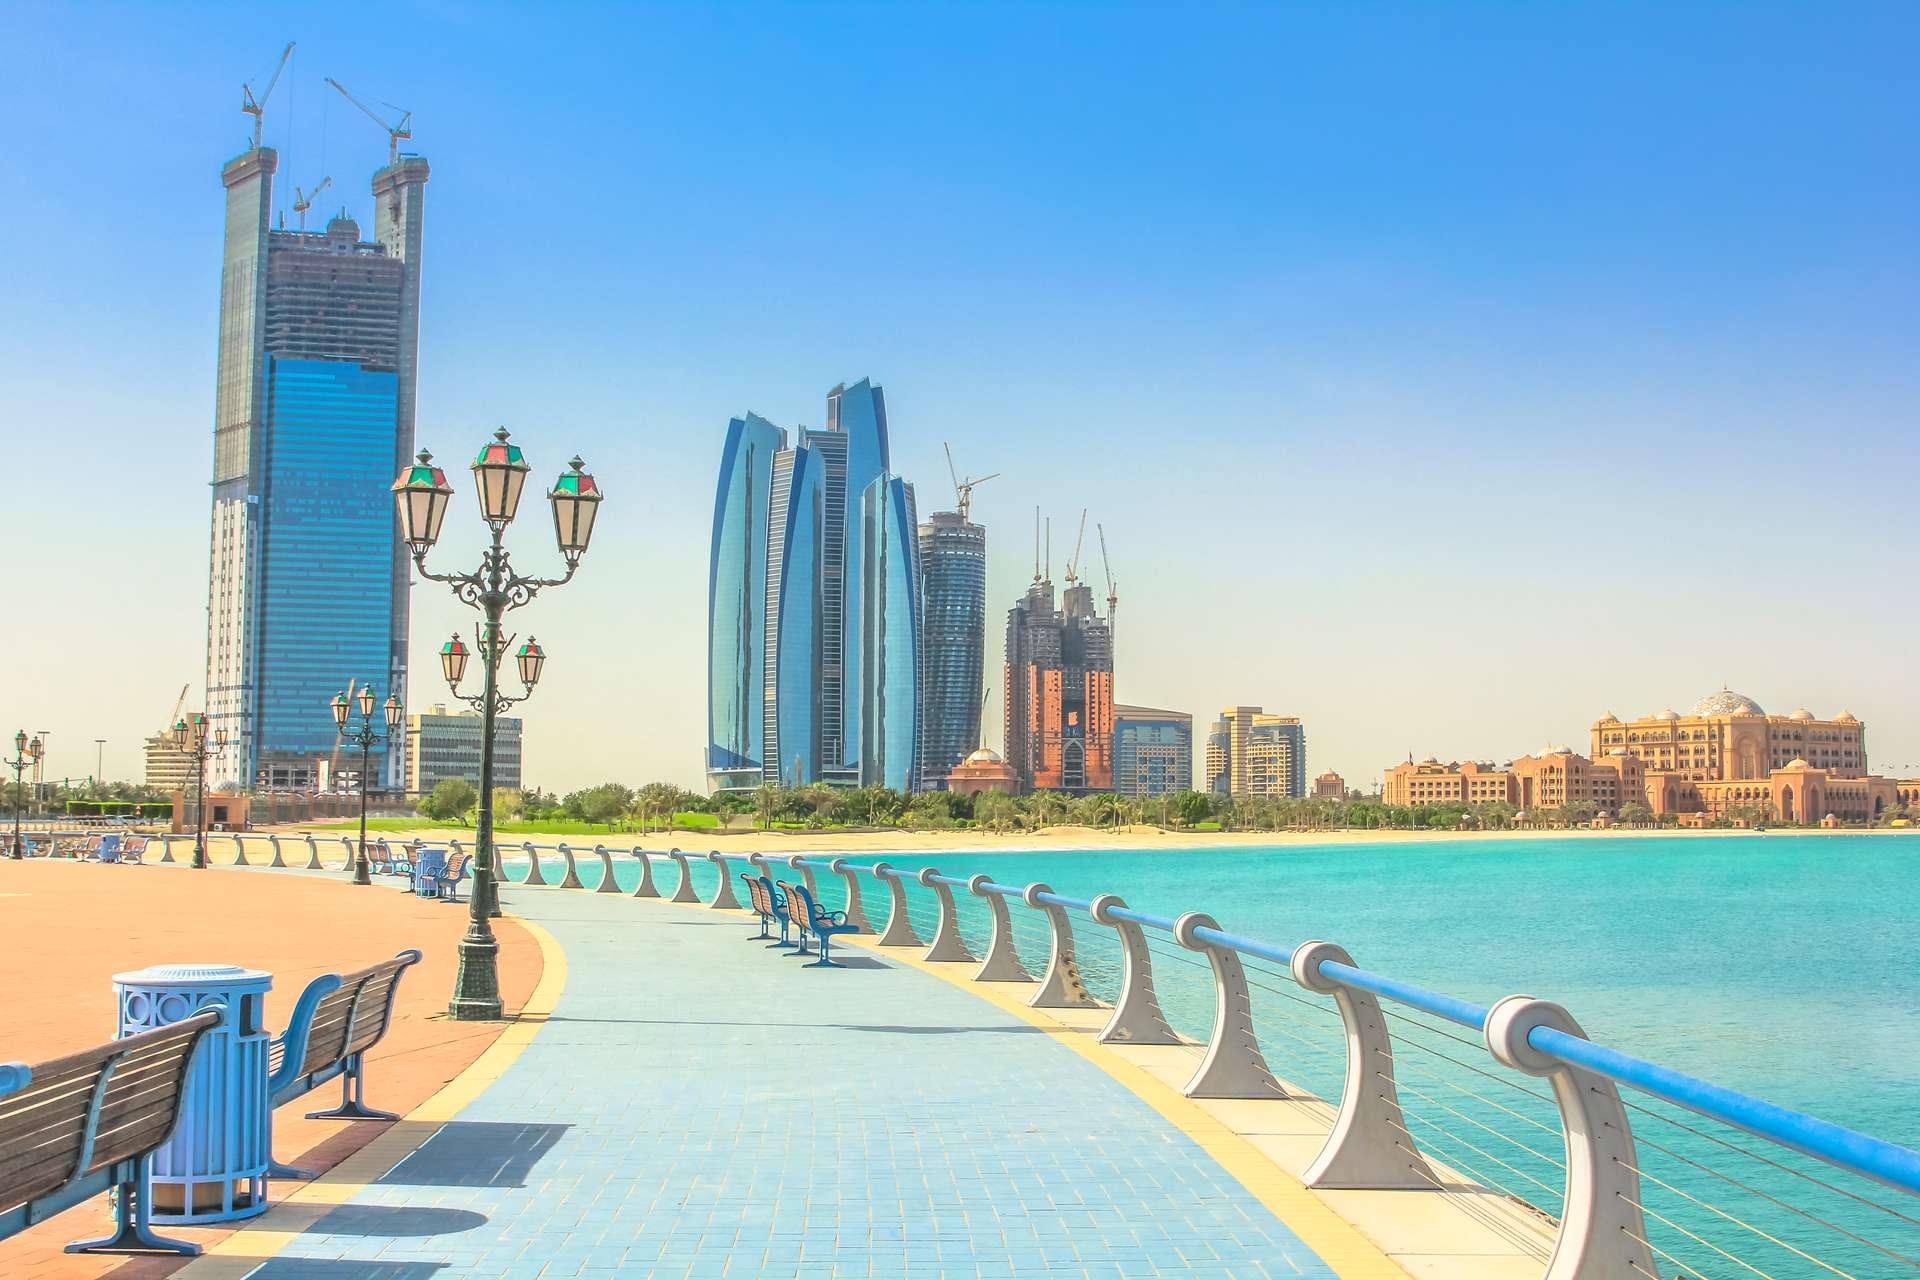 Abu Dhabi view